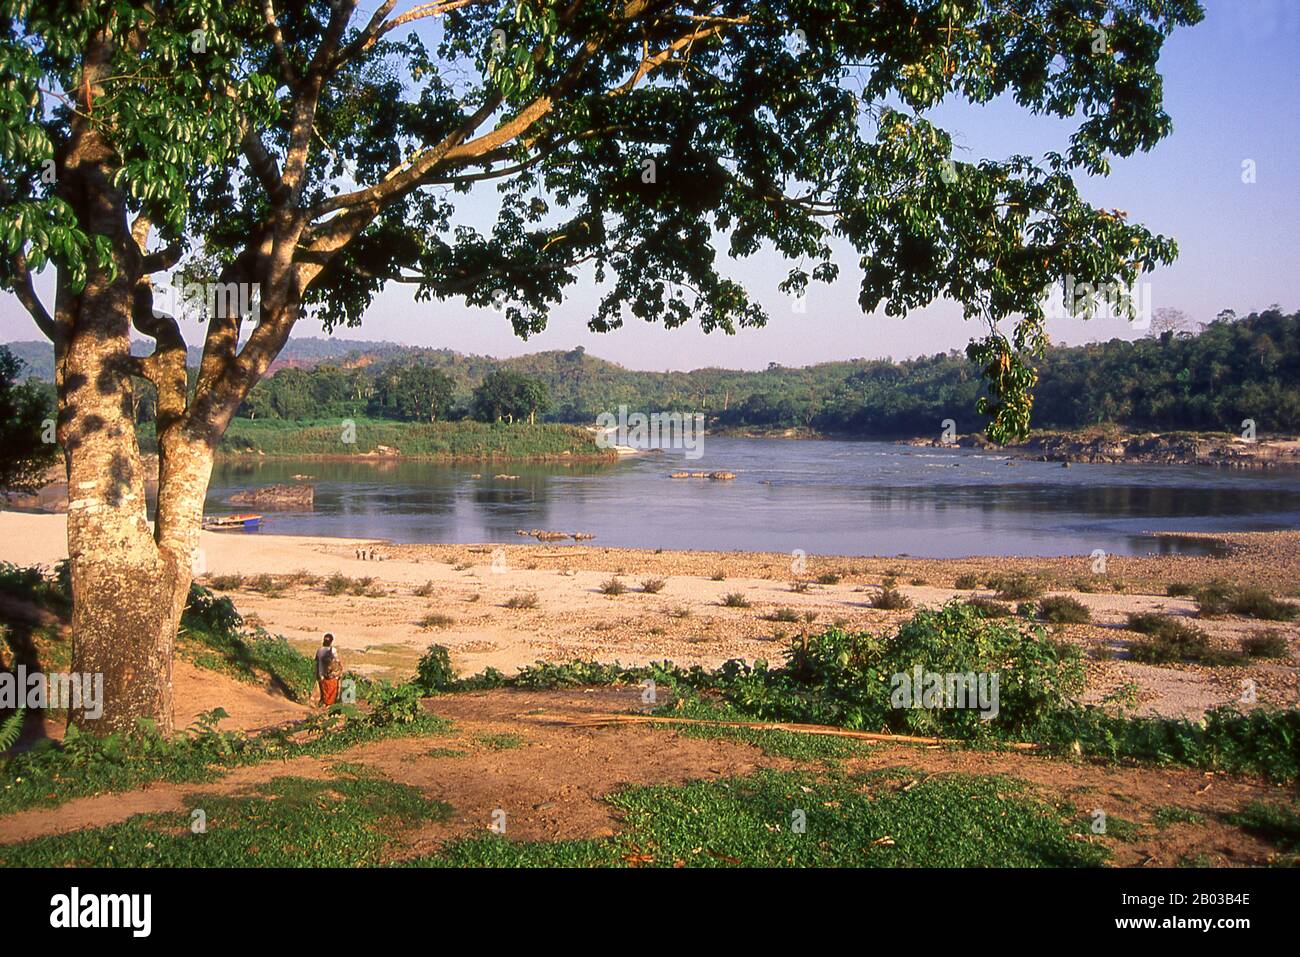 El río Irrawaddy o el río Ayeyarwady, también deletreado Ayeyarwaddy es un río que fluye de norte a sur a través de Birmania (Myanmar). Es el río más grande del país y la vía navegable comercial más importante. Originario de la confluencia de los ríos N'mai y Mali, fluye relativamente recto Norte-Sur antes de vaciarse a través del delta del Irrawaddy en el mar de Damán. Su área de drenaje de alrededor de 255,081 km² cubre una gran parte de Birmania. Después del poema de Rudyard Kipling, a veces se le conoce como 'el camino a Mandalay'. Foto de stock